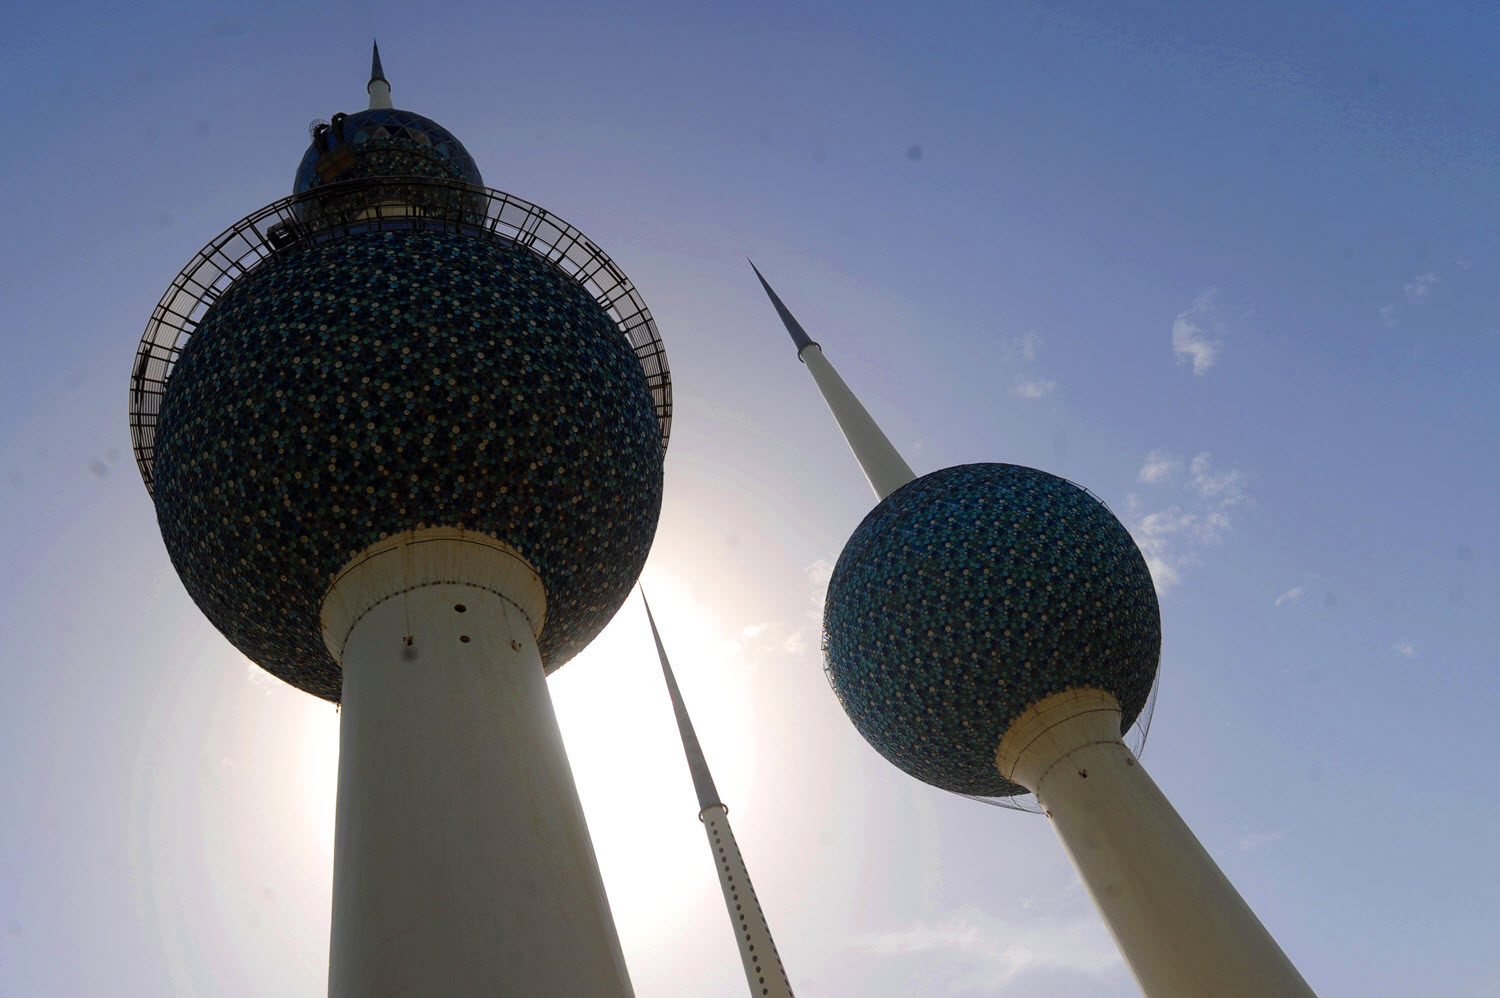 أبراج الكويت تستعيد بريقها بعد انتهاء أعمال الصيانة 